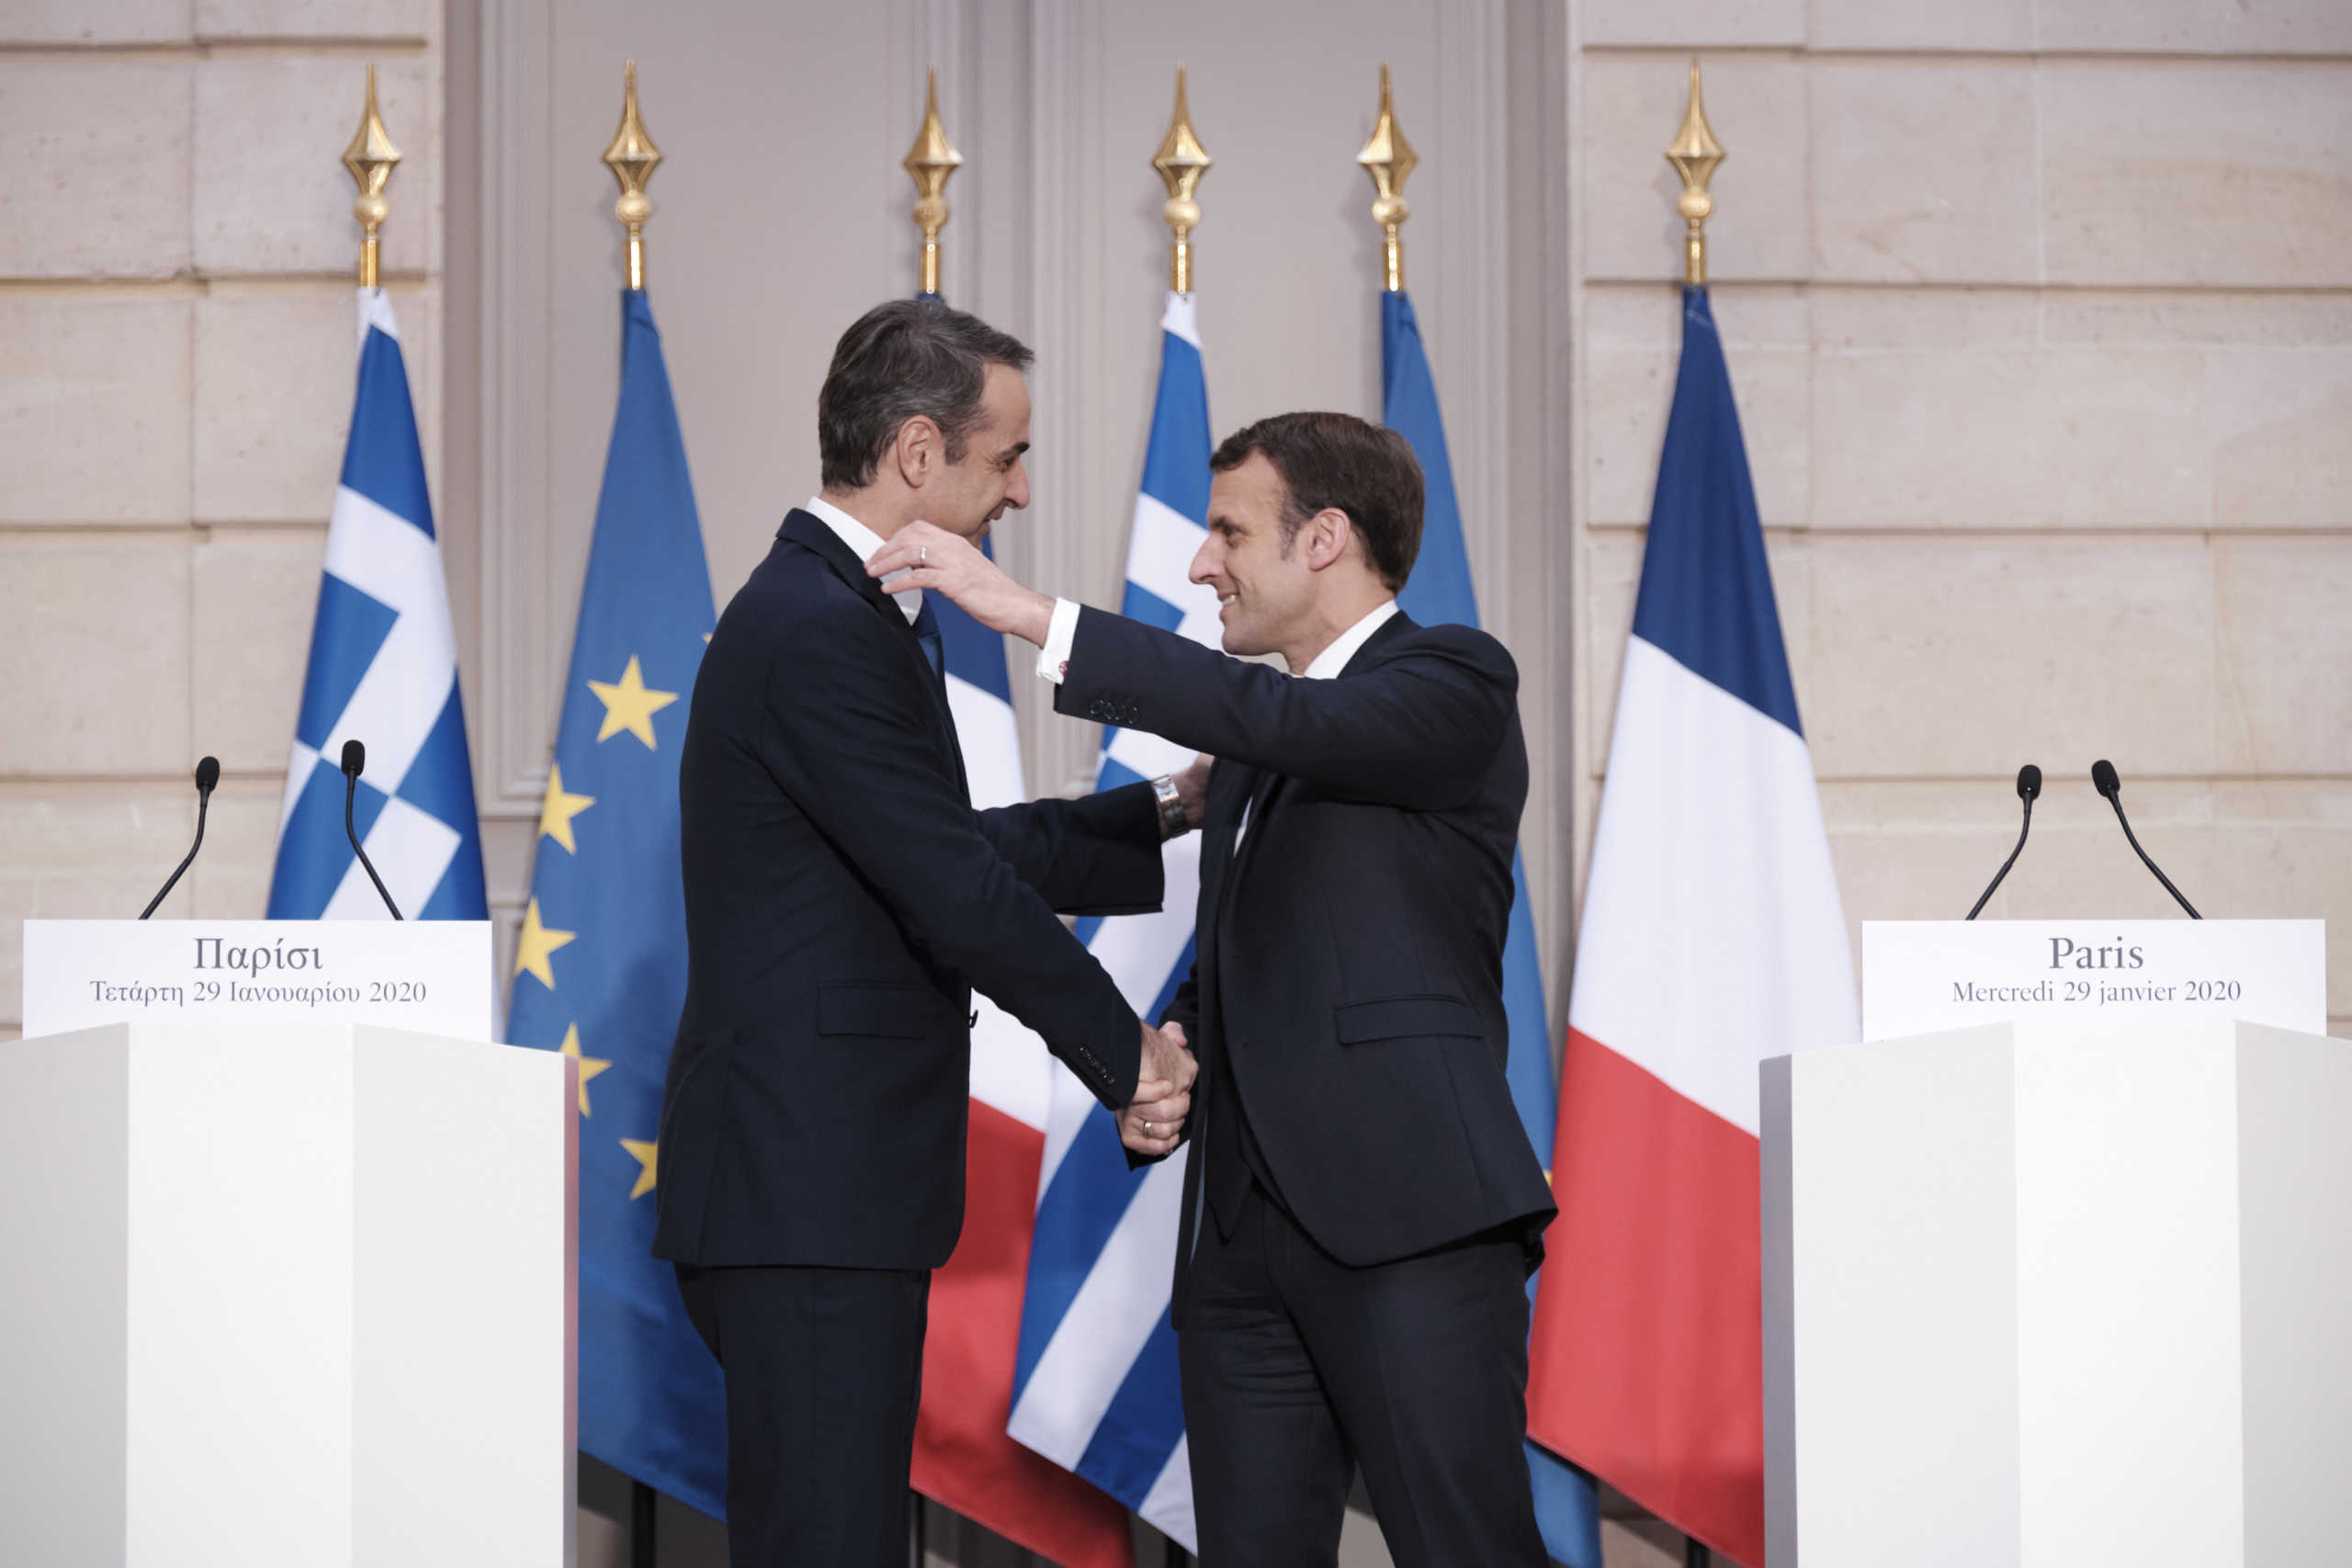 Ελλάς-Γαλλία… συμμαχία και στα εξοπλιστικά – Νέο κάλεσμα στην Τουρκία να εγκαταλείψει τις προκλήσεις